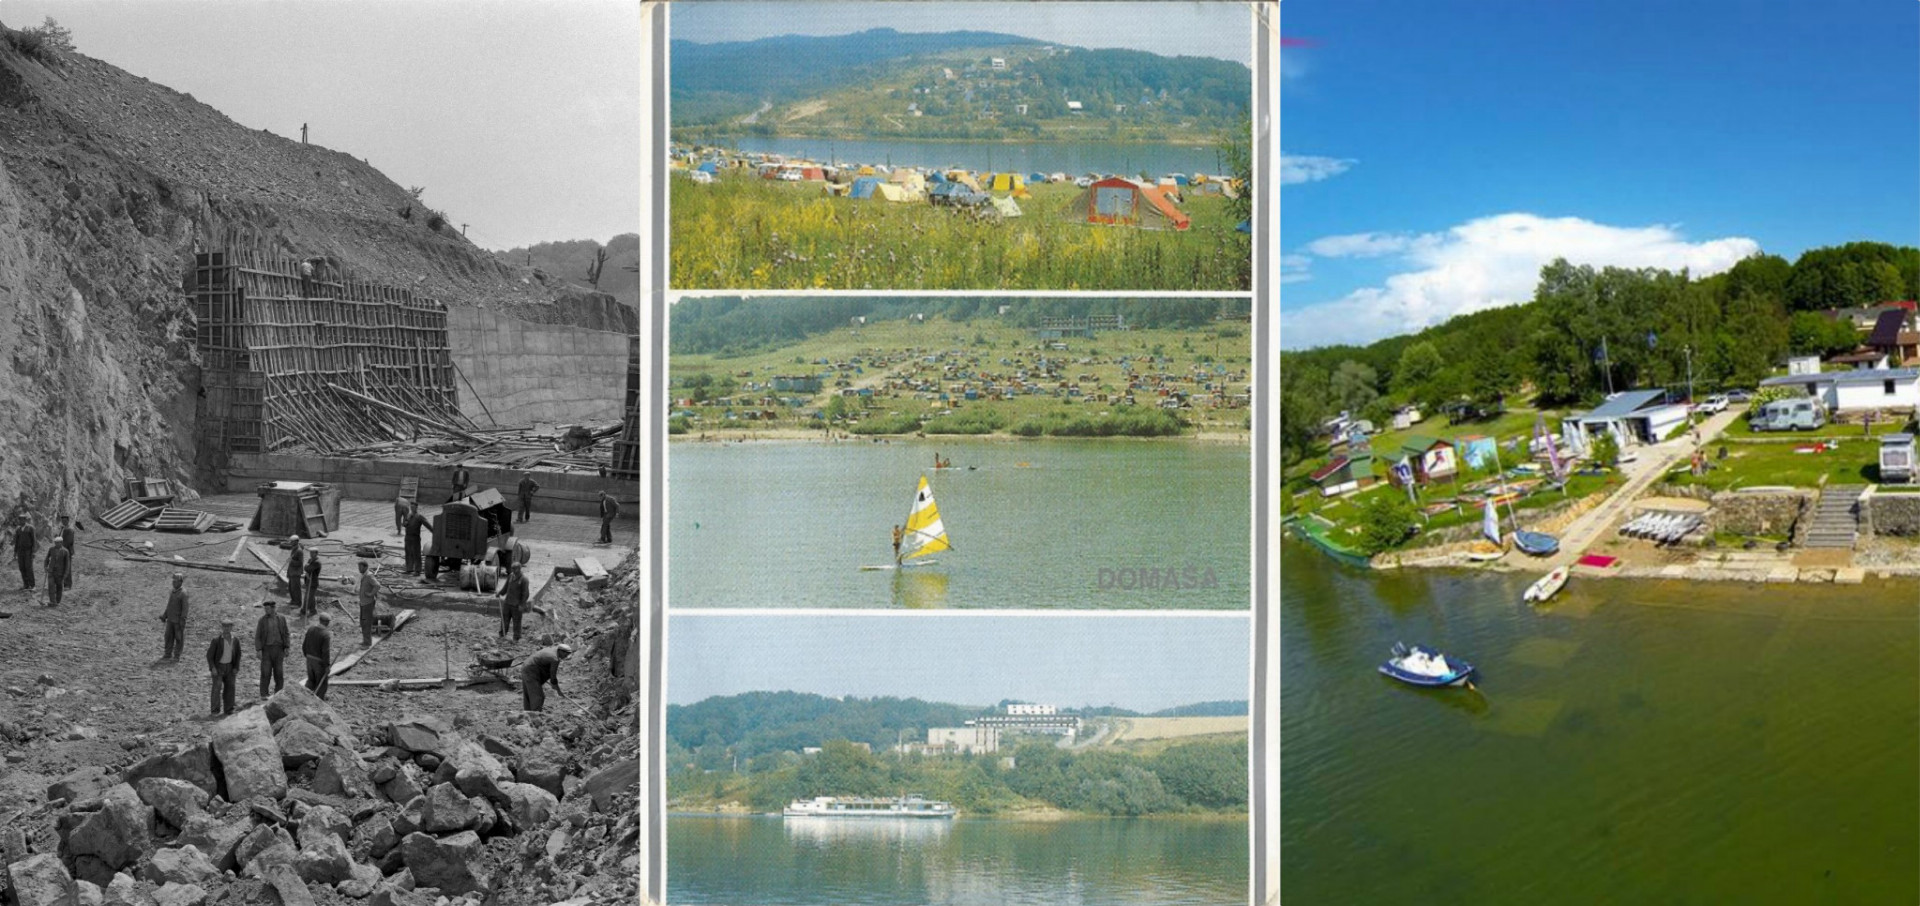 Veľká Domaša je viacúčelové vodné dielo - vodná nádrž v okresoch Vranov nad Topľou a Stropkov. Výstavba začala vo februári 1962 a ukončená bola v decembri 1967 a v decembri 1967 bola ukončená výstavba celého vodného diela, uvádza Wikipedia.

Nádrž má veľký vodohospodársky význam s polyfunkčným charakterom. Pre ročné zrážkové výkyvy a nerovnomerné odbery vody hladina aj v priebehu roka intenzívne kolíše.